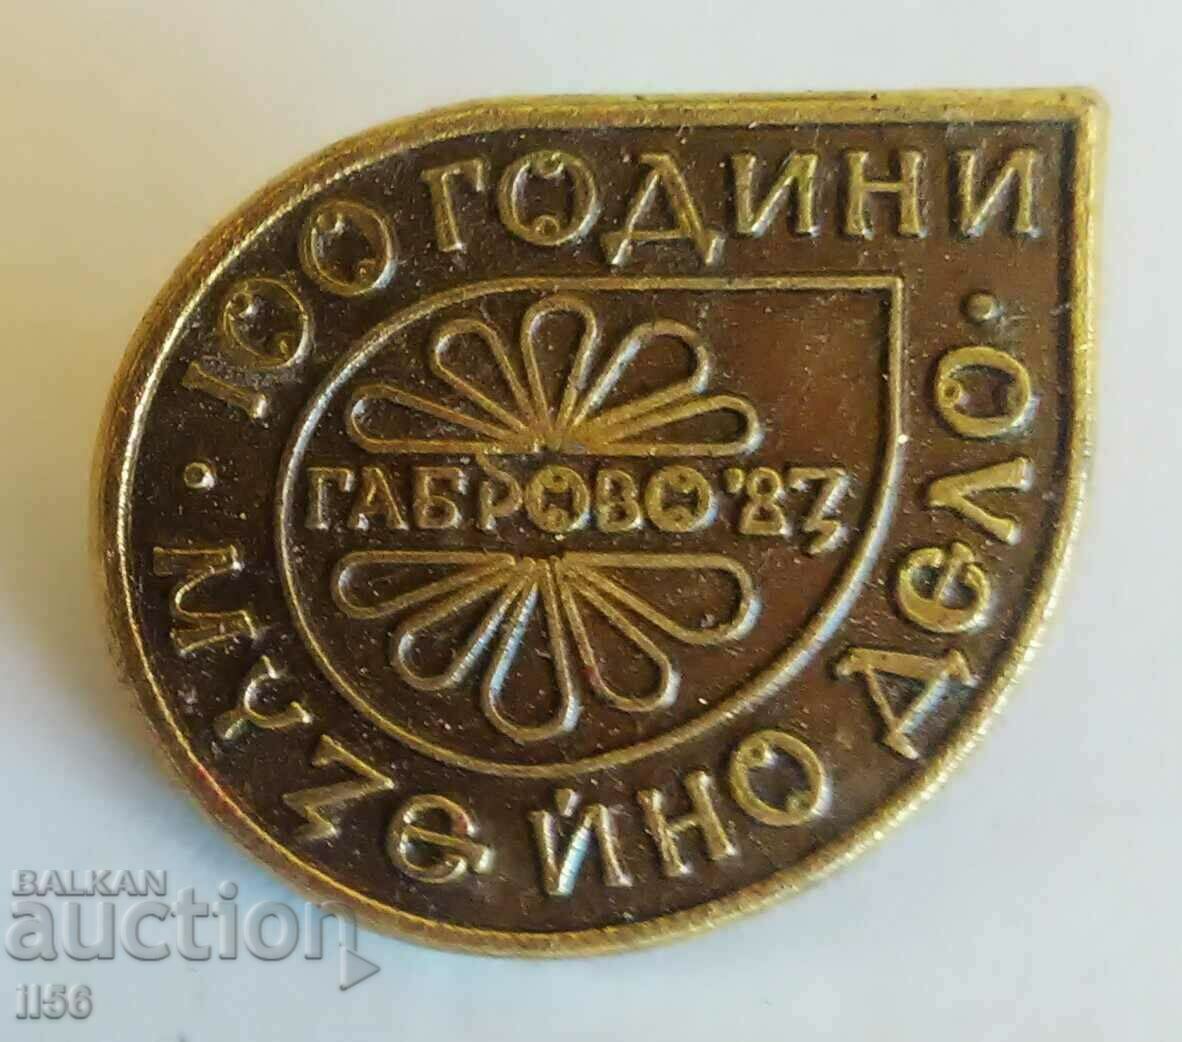 Insigna - 100 de ani de muzeu - Gabrovo